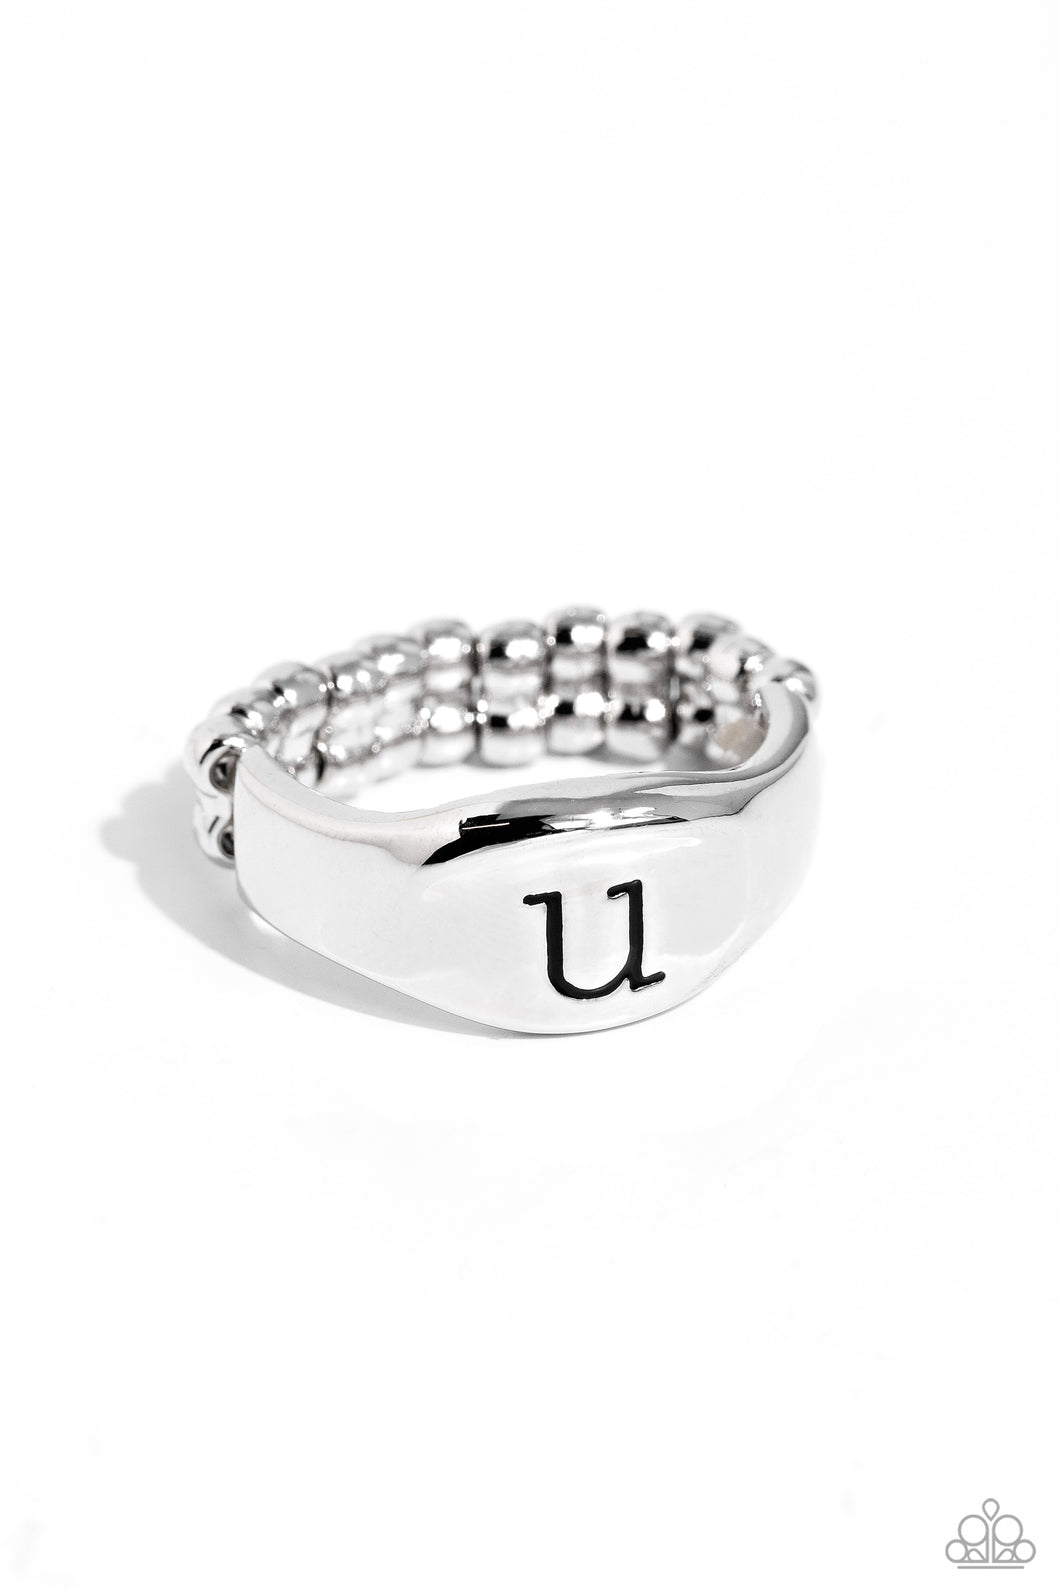 Monogram Memento - Silver - U Initial Ring